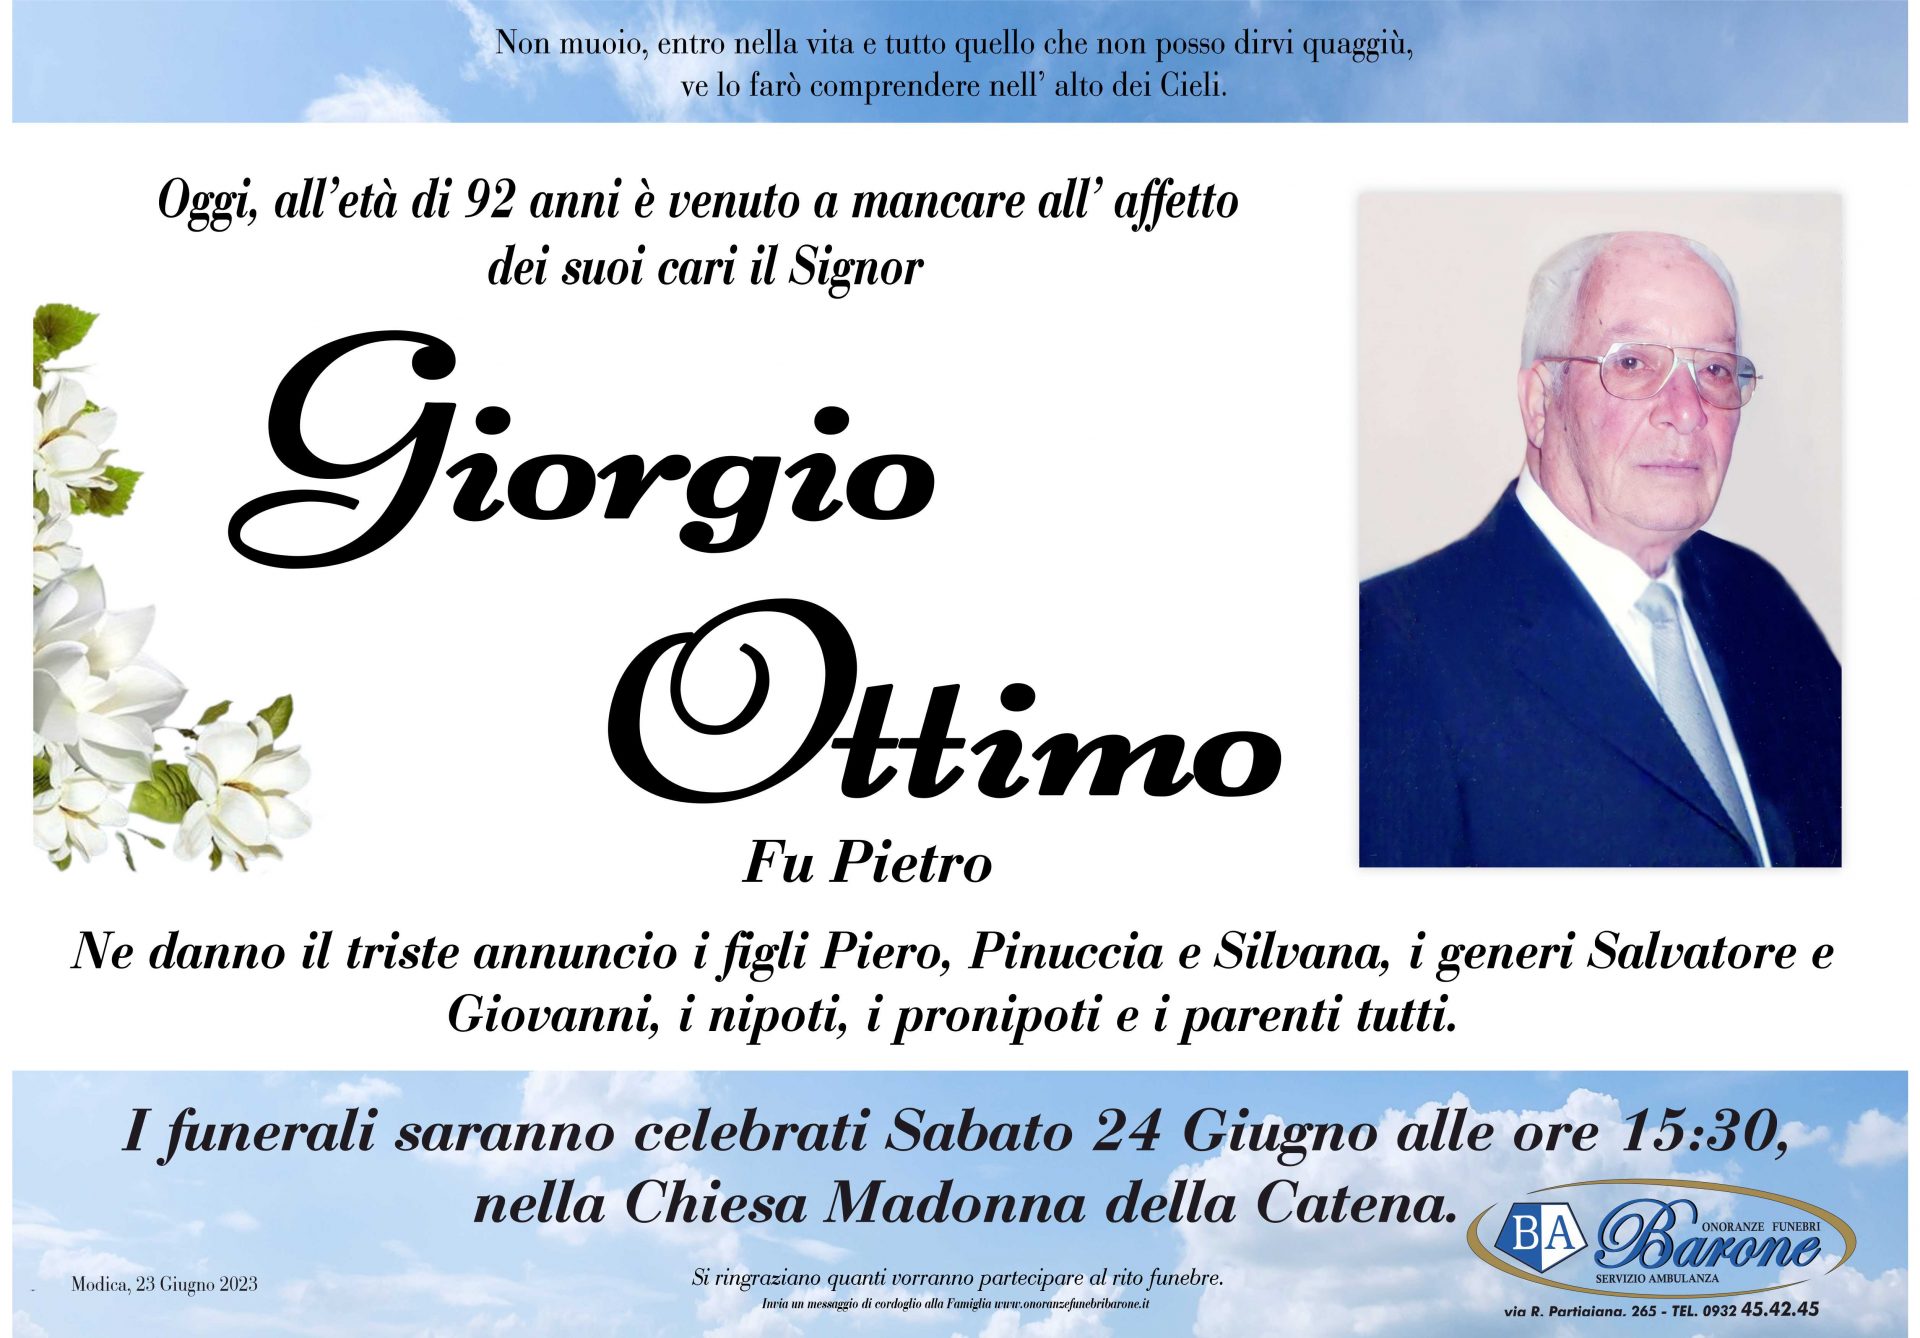 Giorgio Ottimo